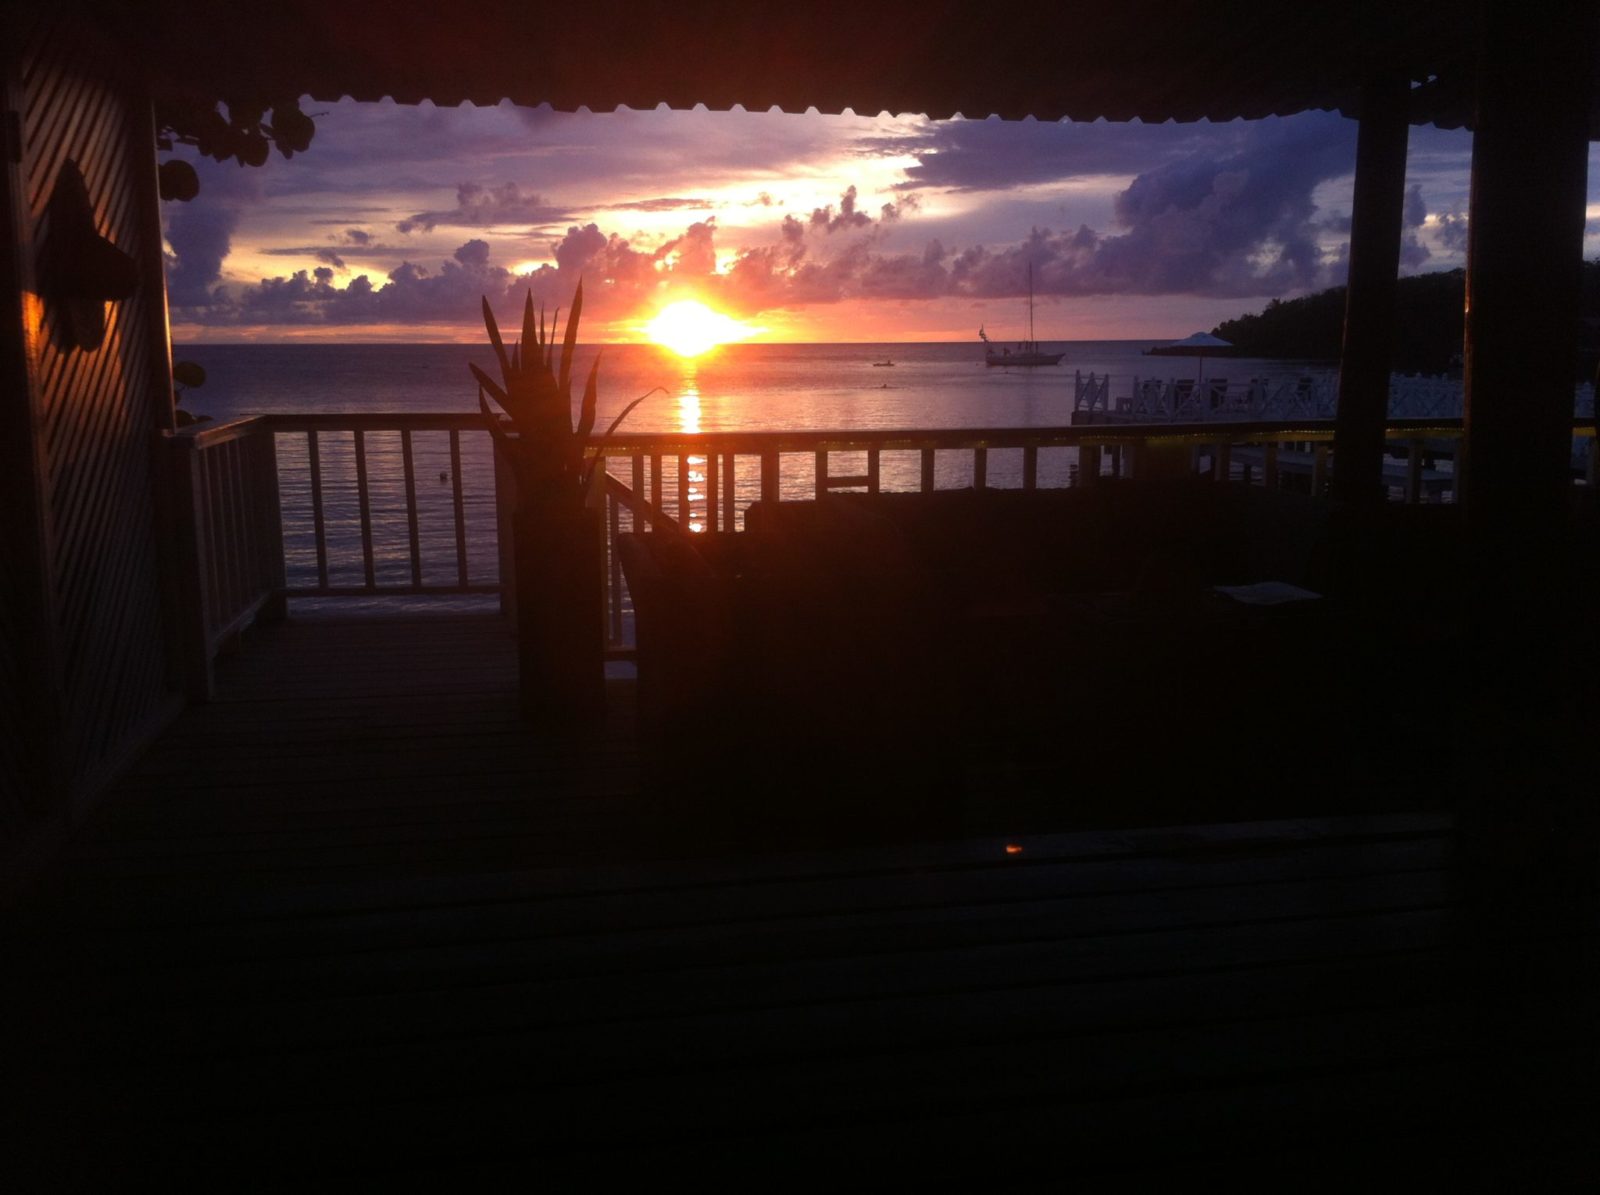 Roatan sunset as seen by an expat